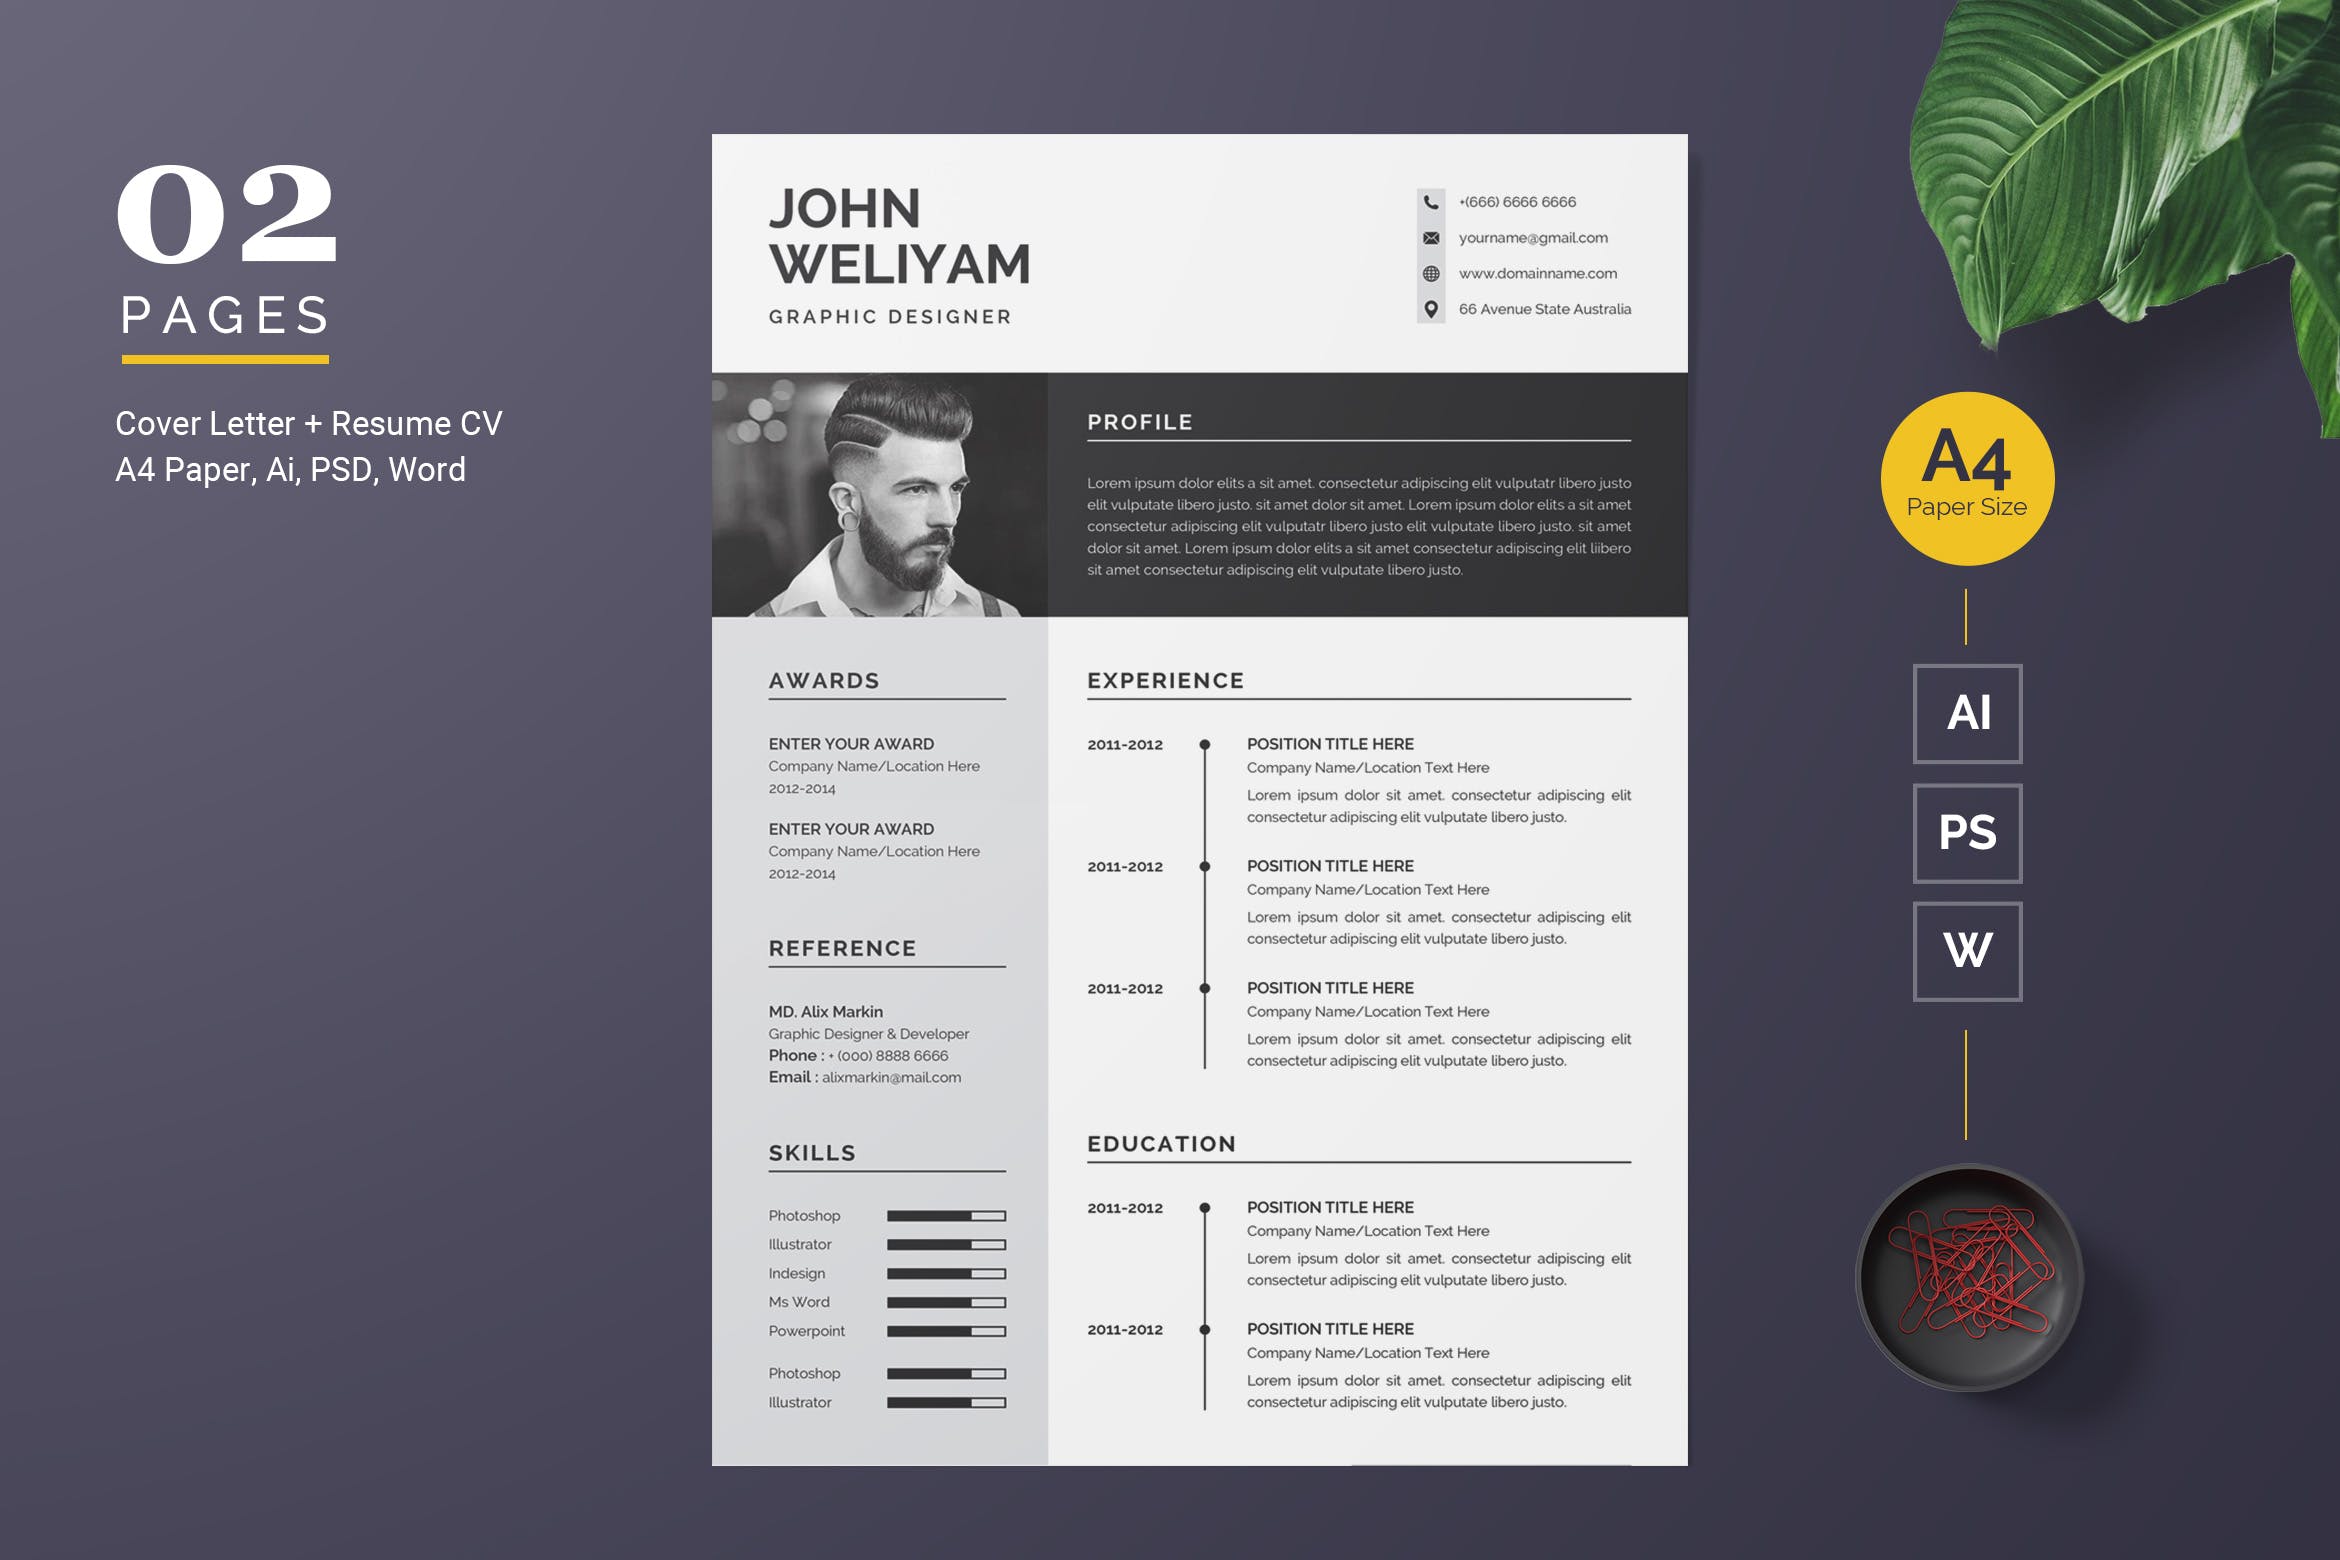 现代简约设计风格设计师电子简历模板 Modern Resume Template插图